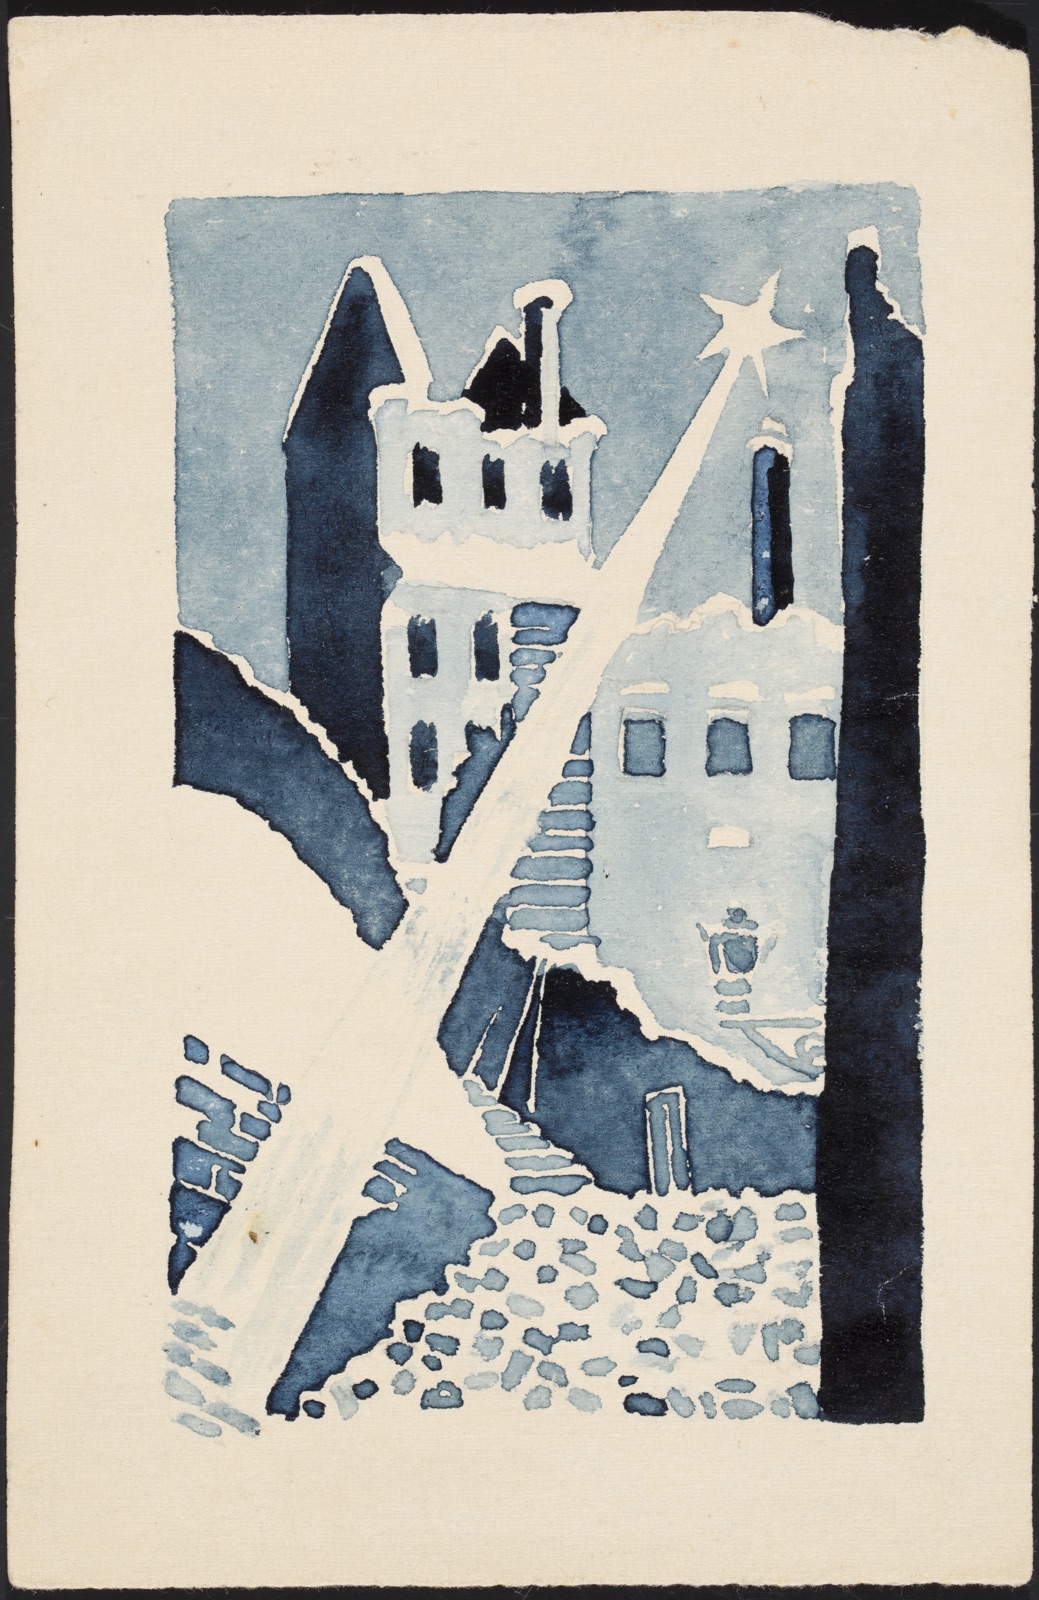 Pusta, spalona Warszawa w nocy by Henryk Beck - 1944 - 15,3 x 10 cm 